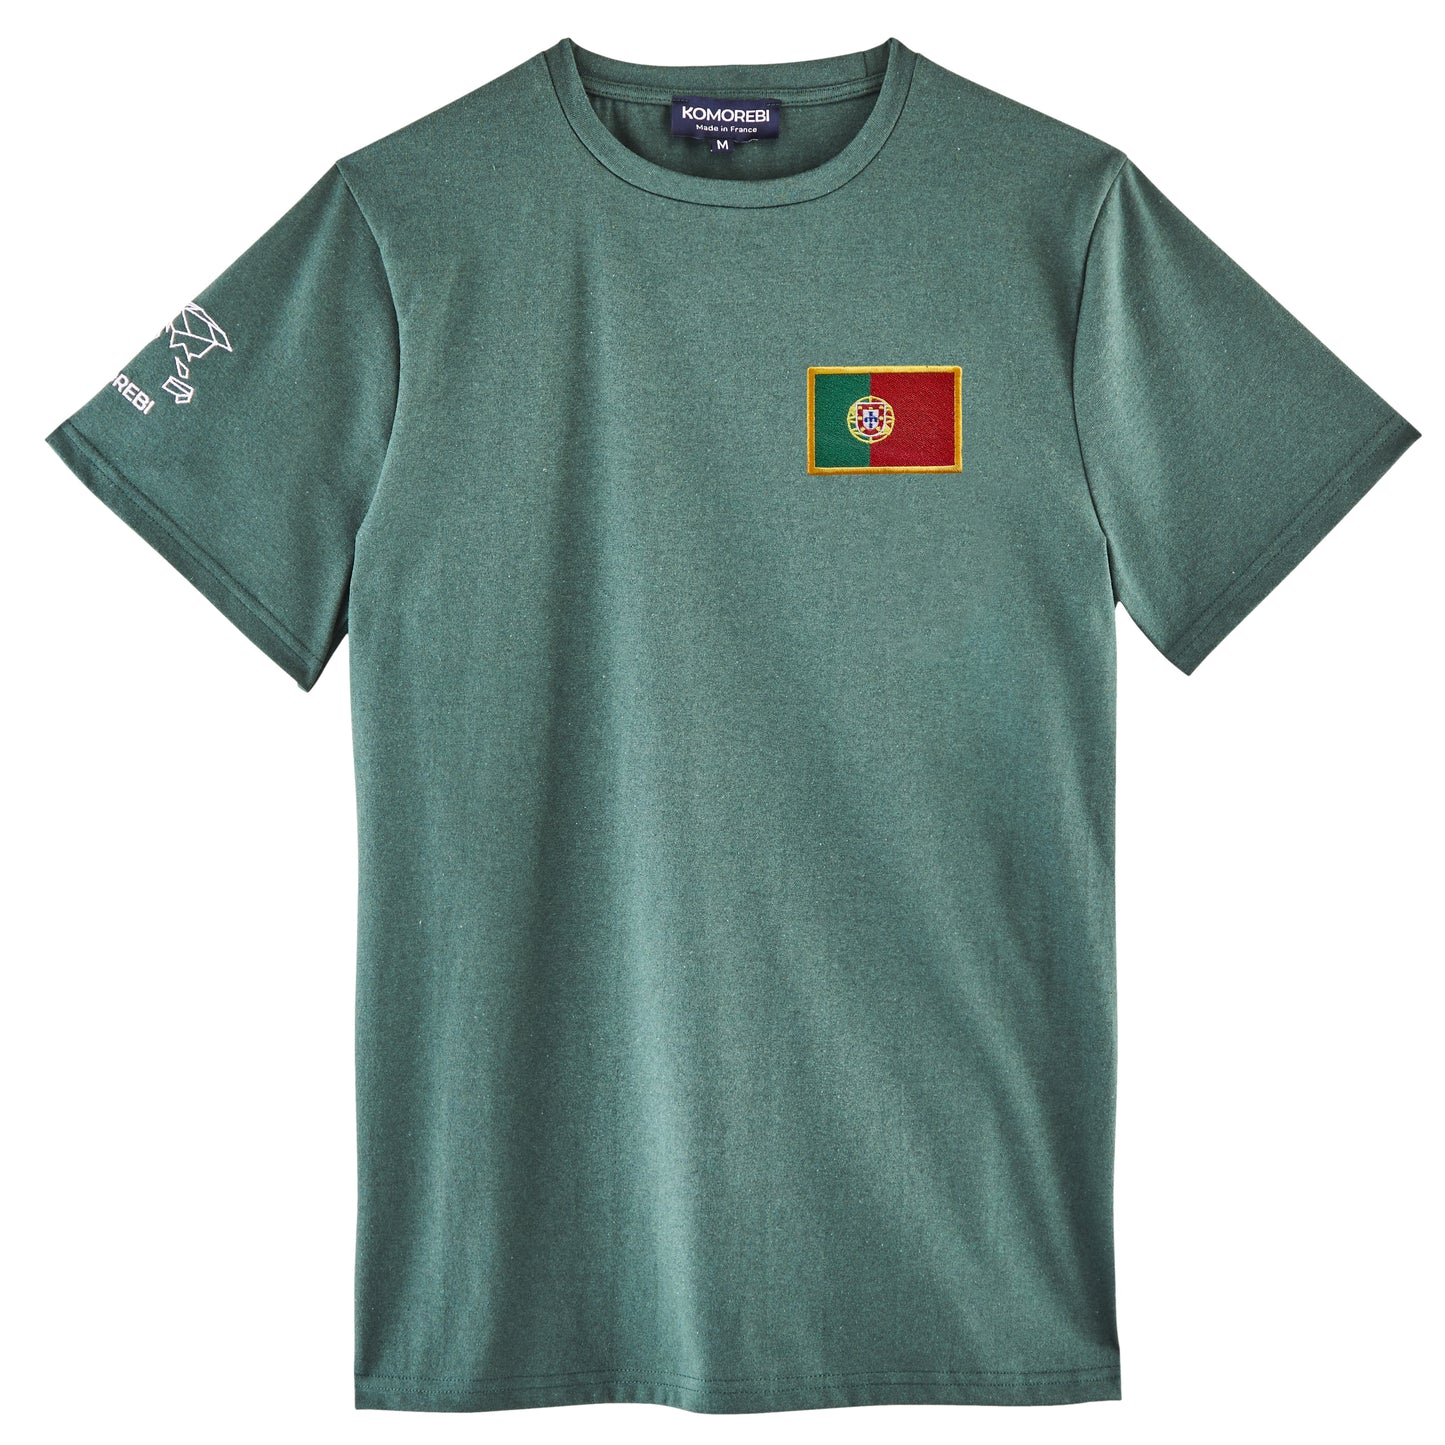 Portugal - flag t-shirt